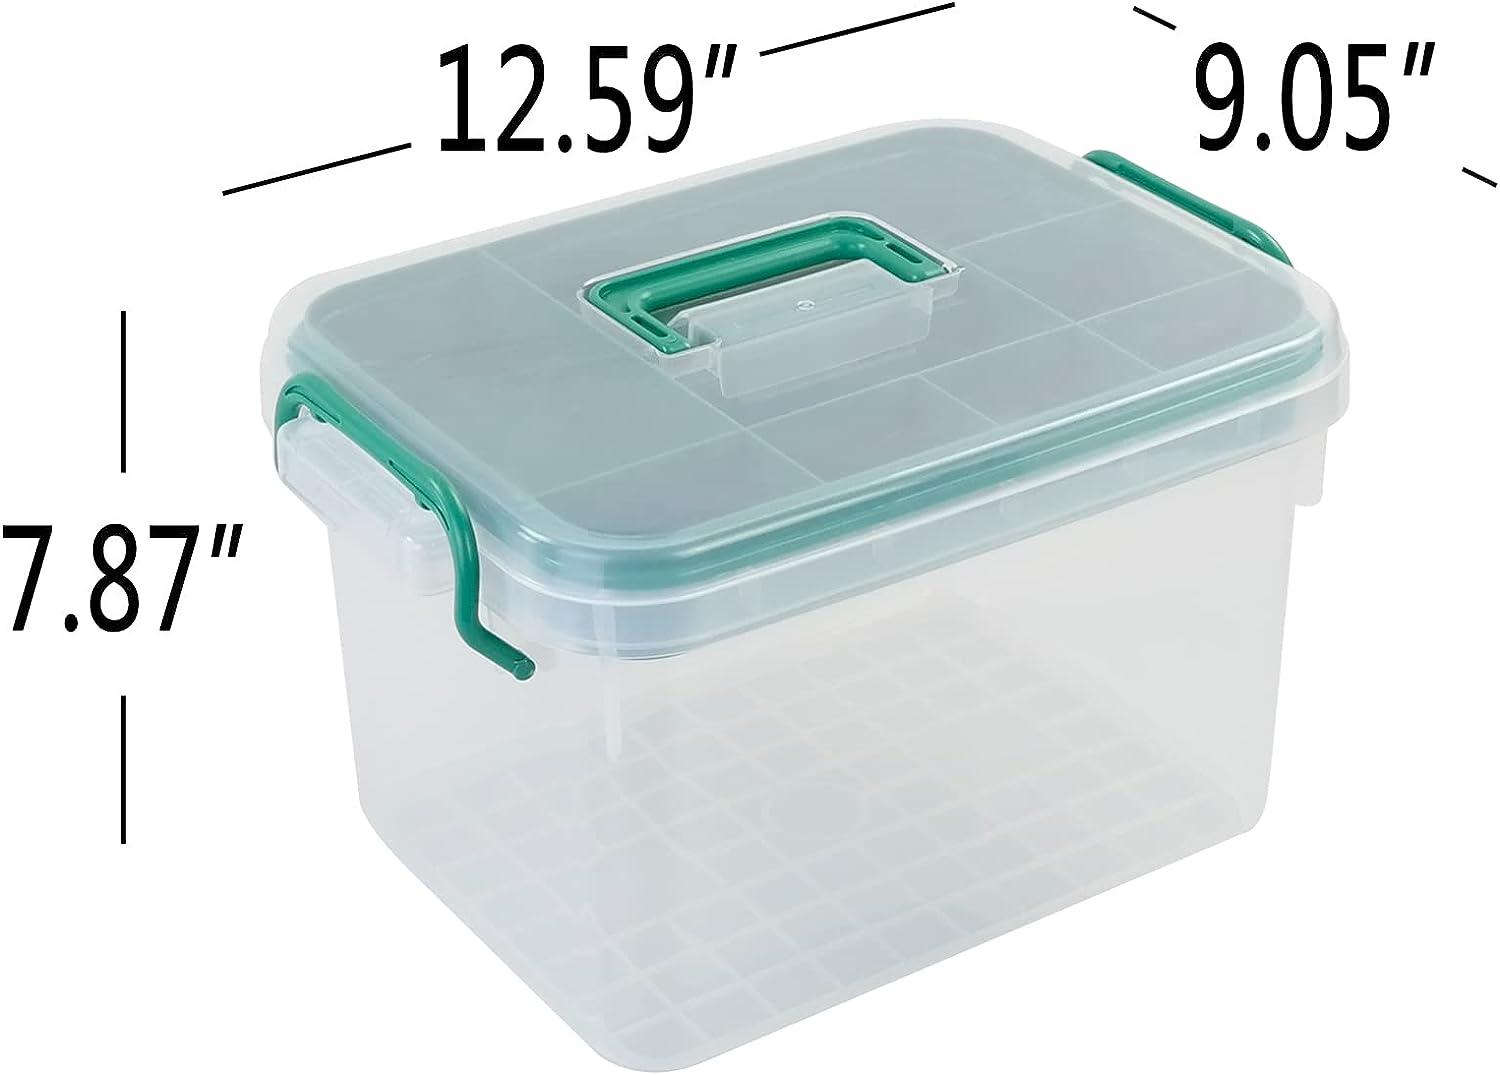 Idomy Plastic Lockable Medication Box Family First Aid Box Medicine Lock Organizer Clear